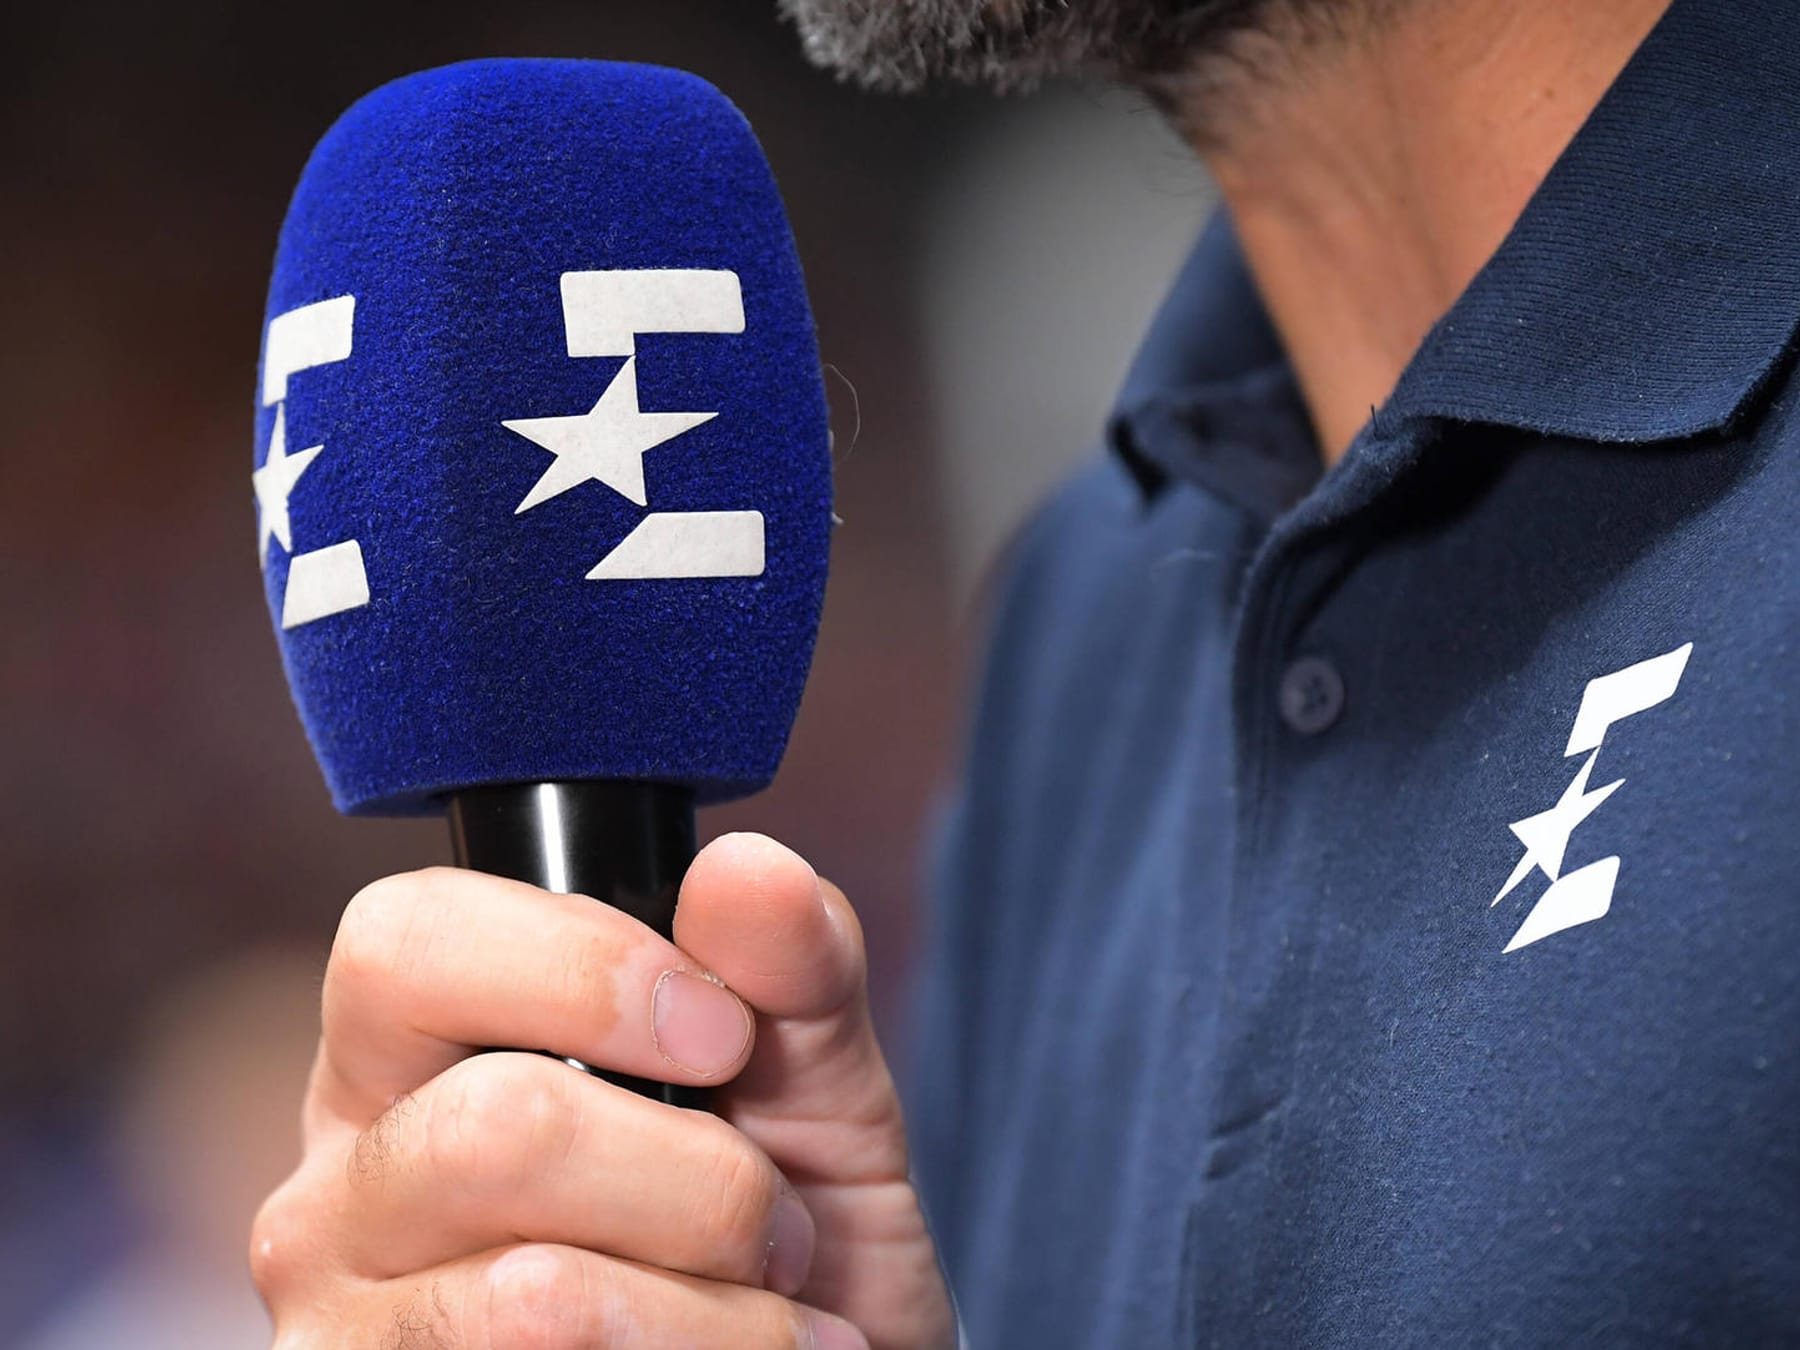 Eurosport Sender will wohl TV-Vertrag mit Bundesliga kündigen